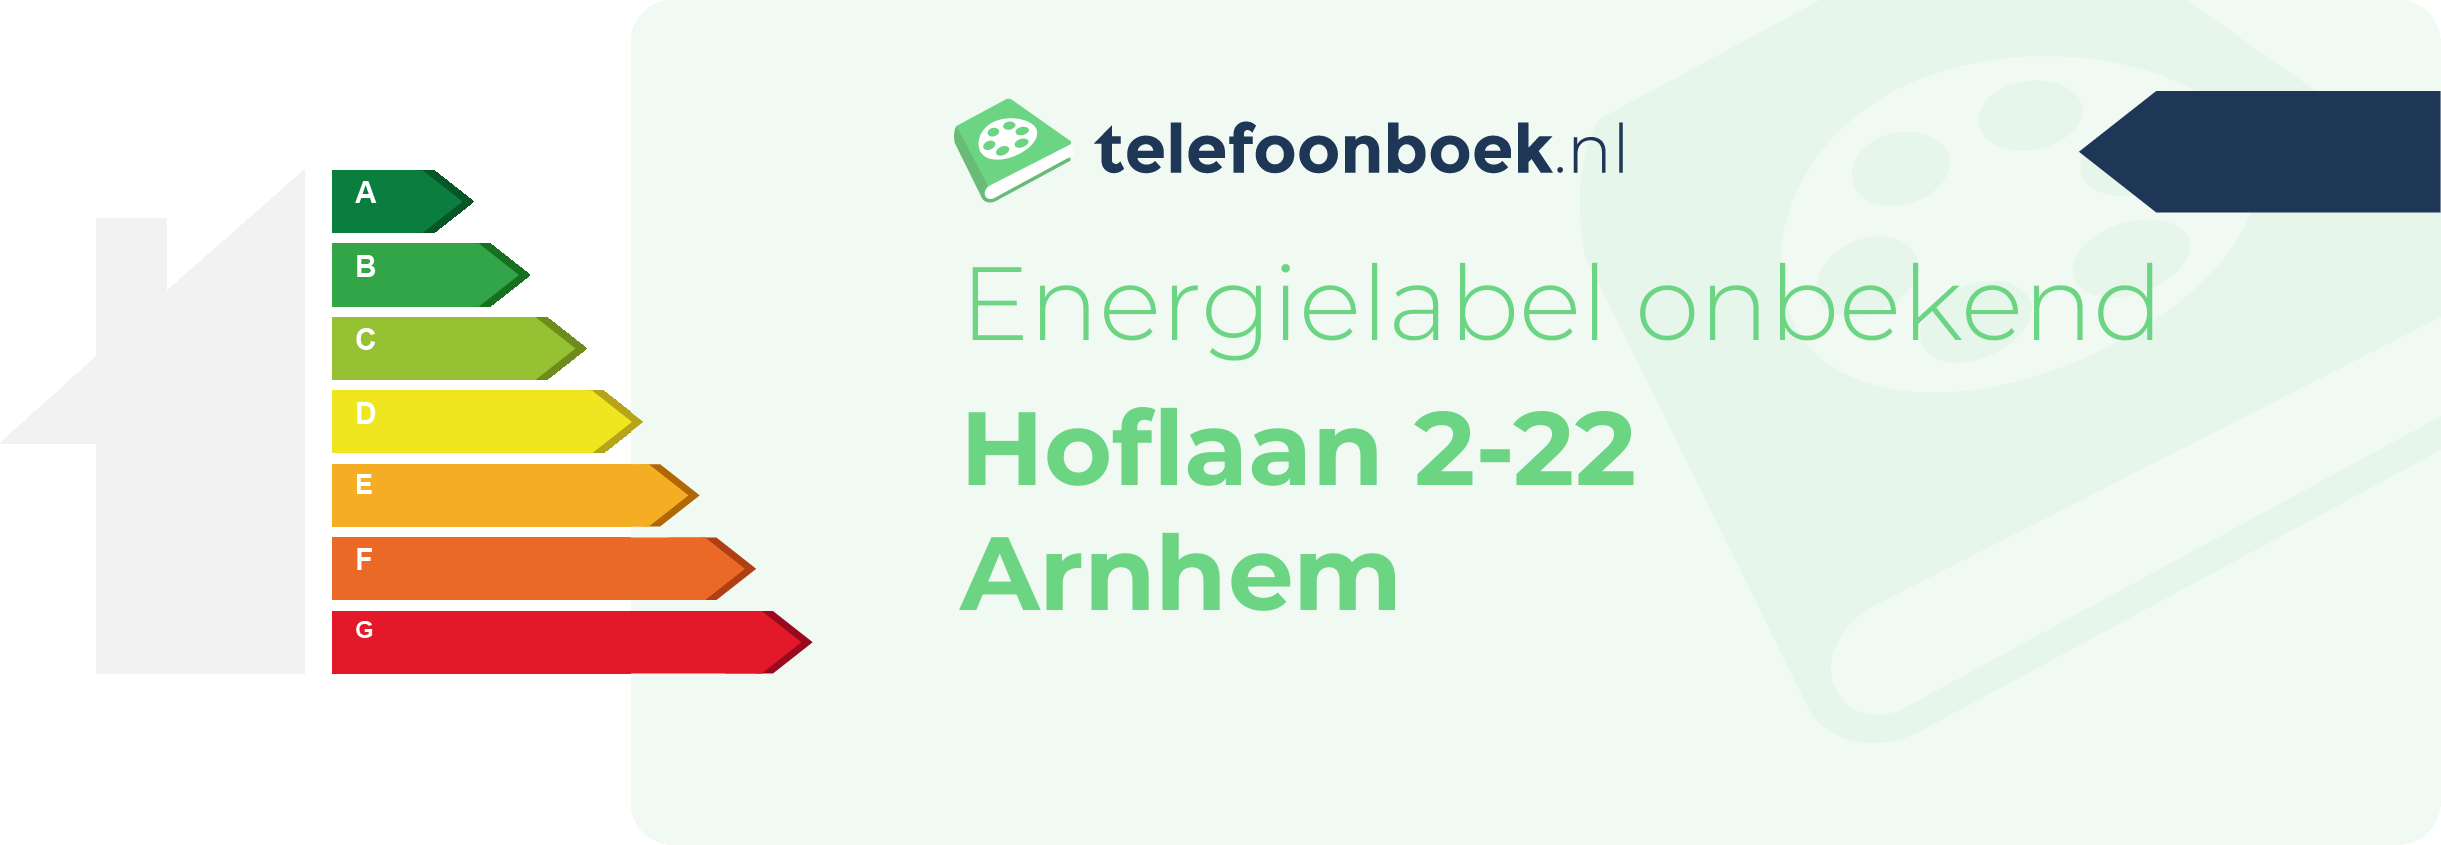 Energielabel Hoflaan 2-22 Arnhem